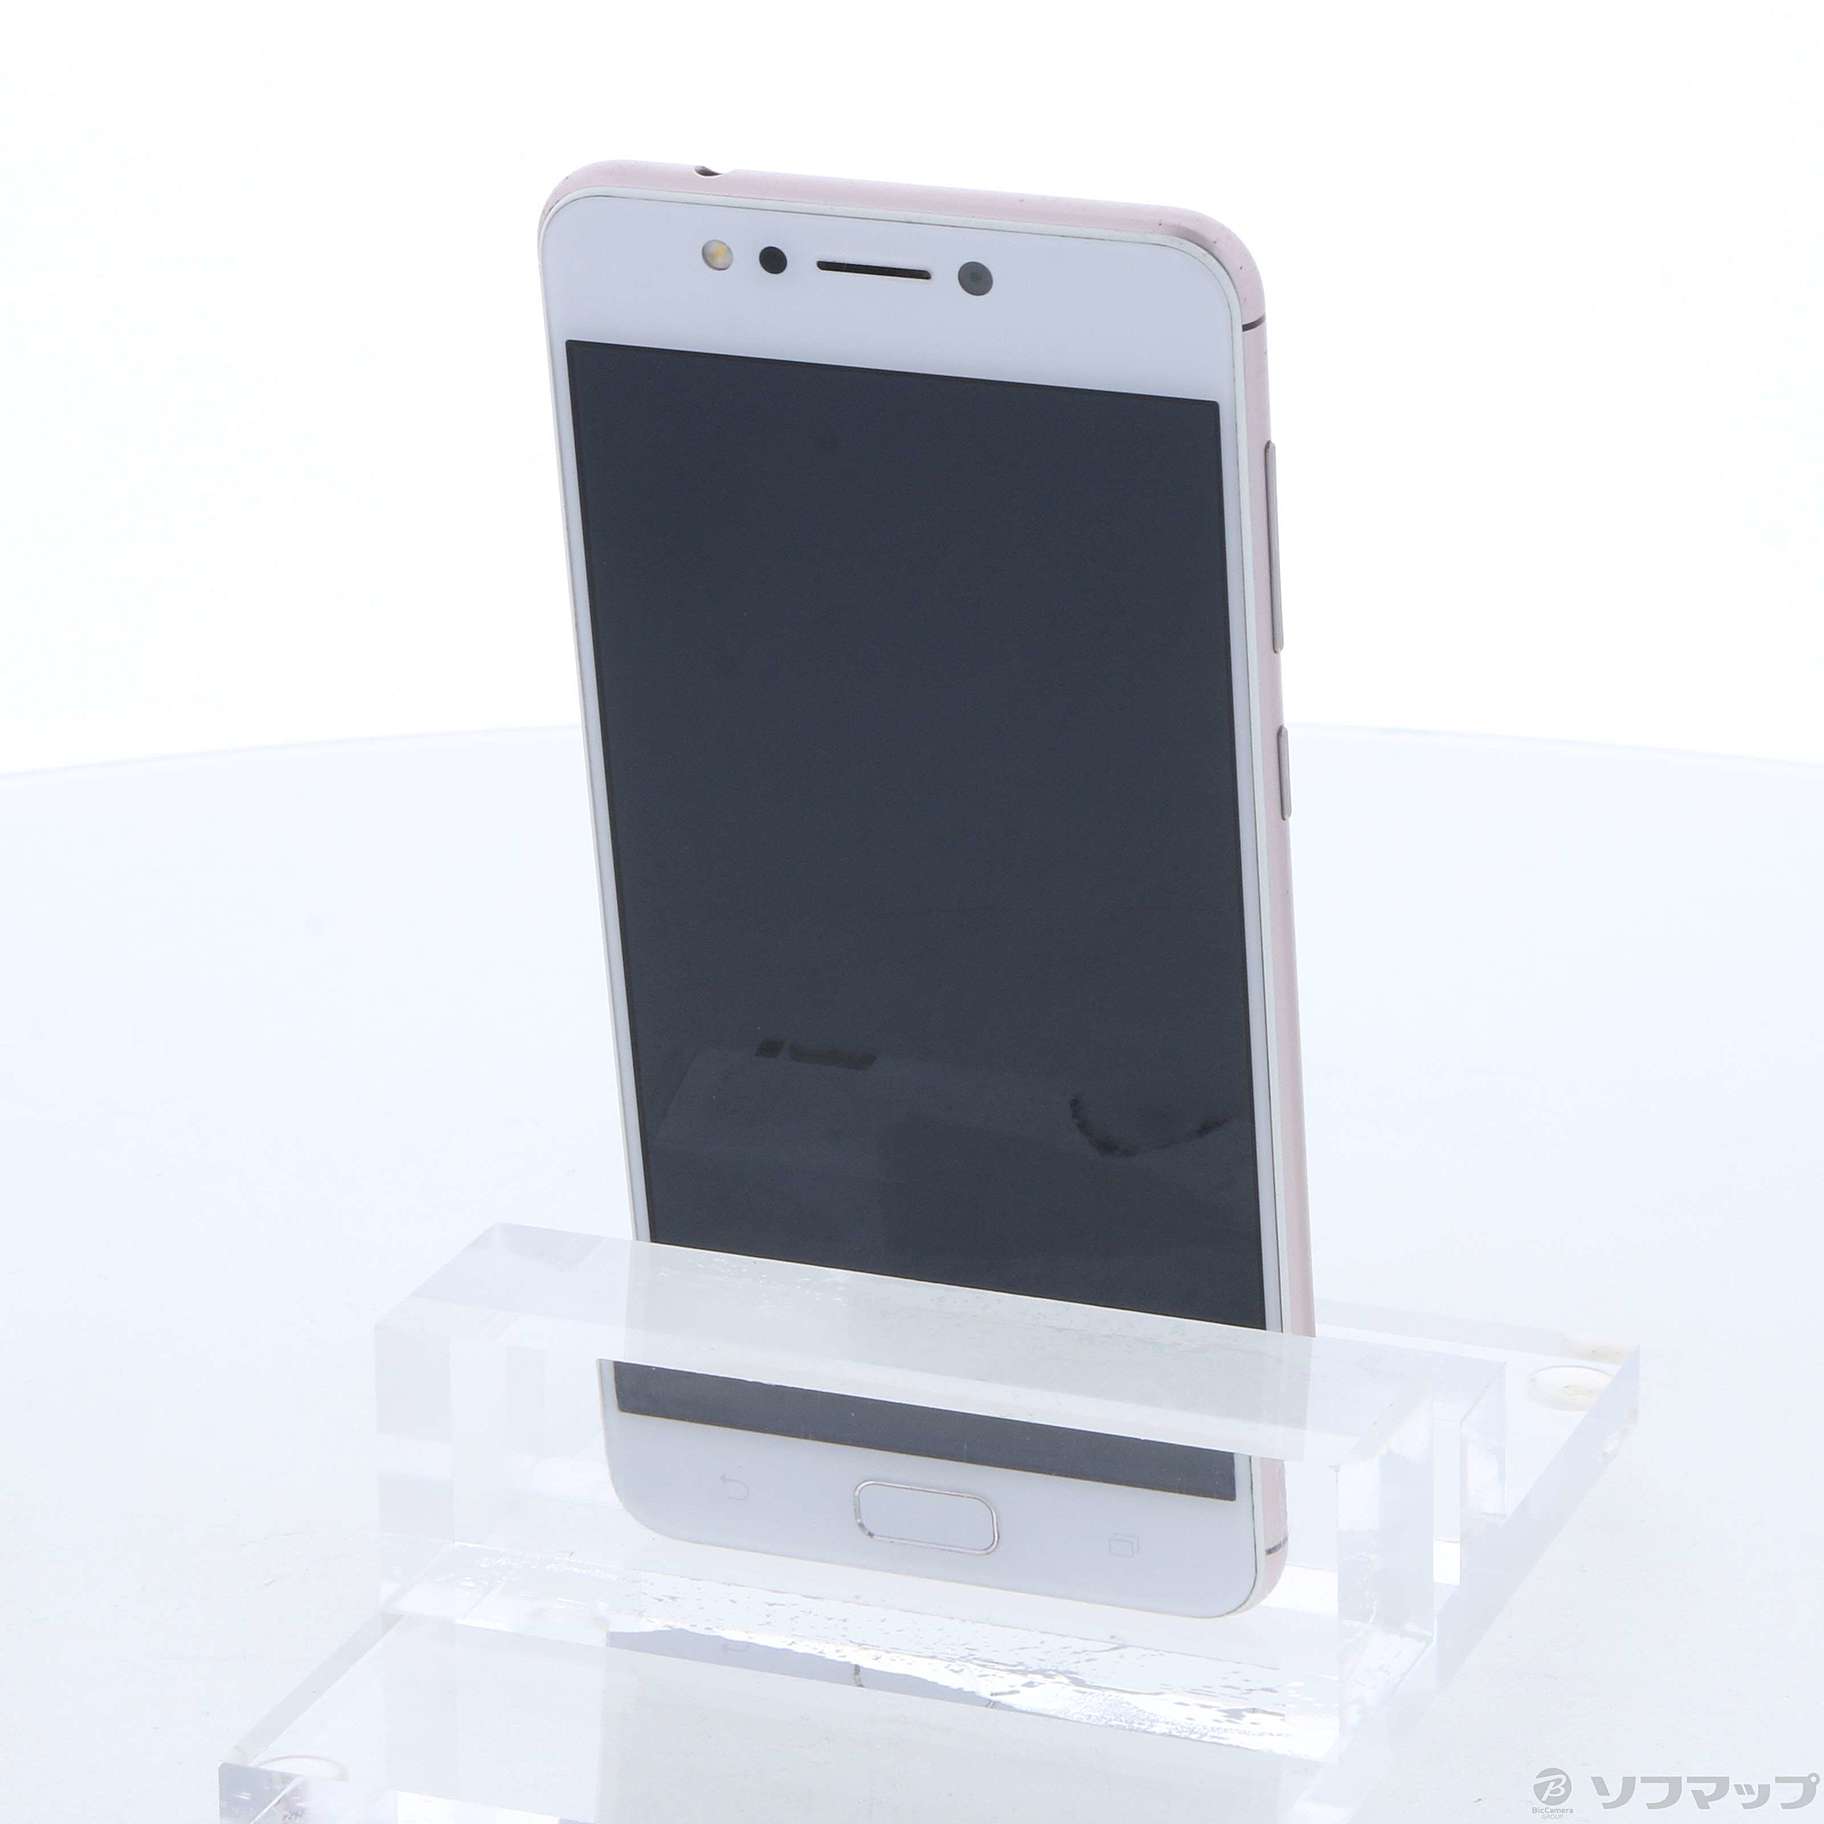 中古】ZenFone 4 Max 32GB ローズピンク ZC520KL-PK32S3 SIMフリー ...